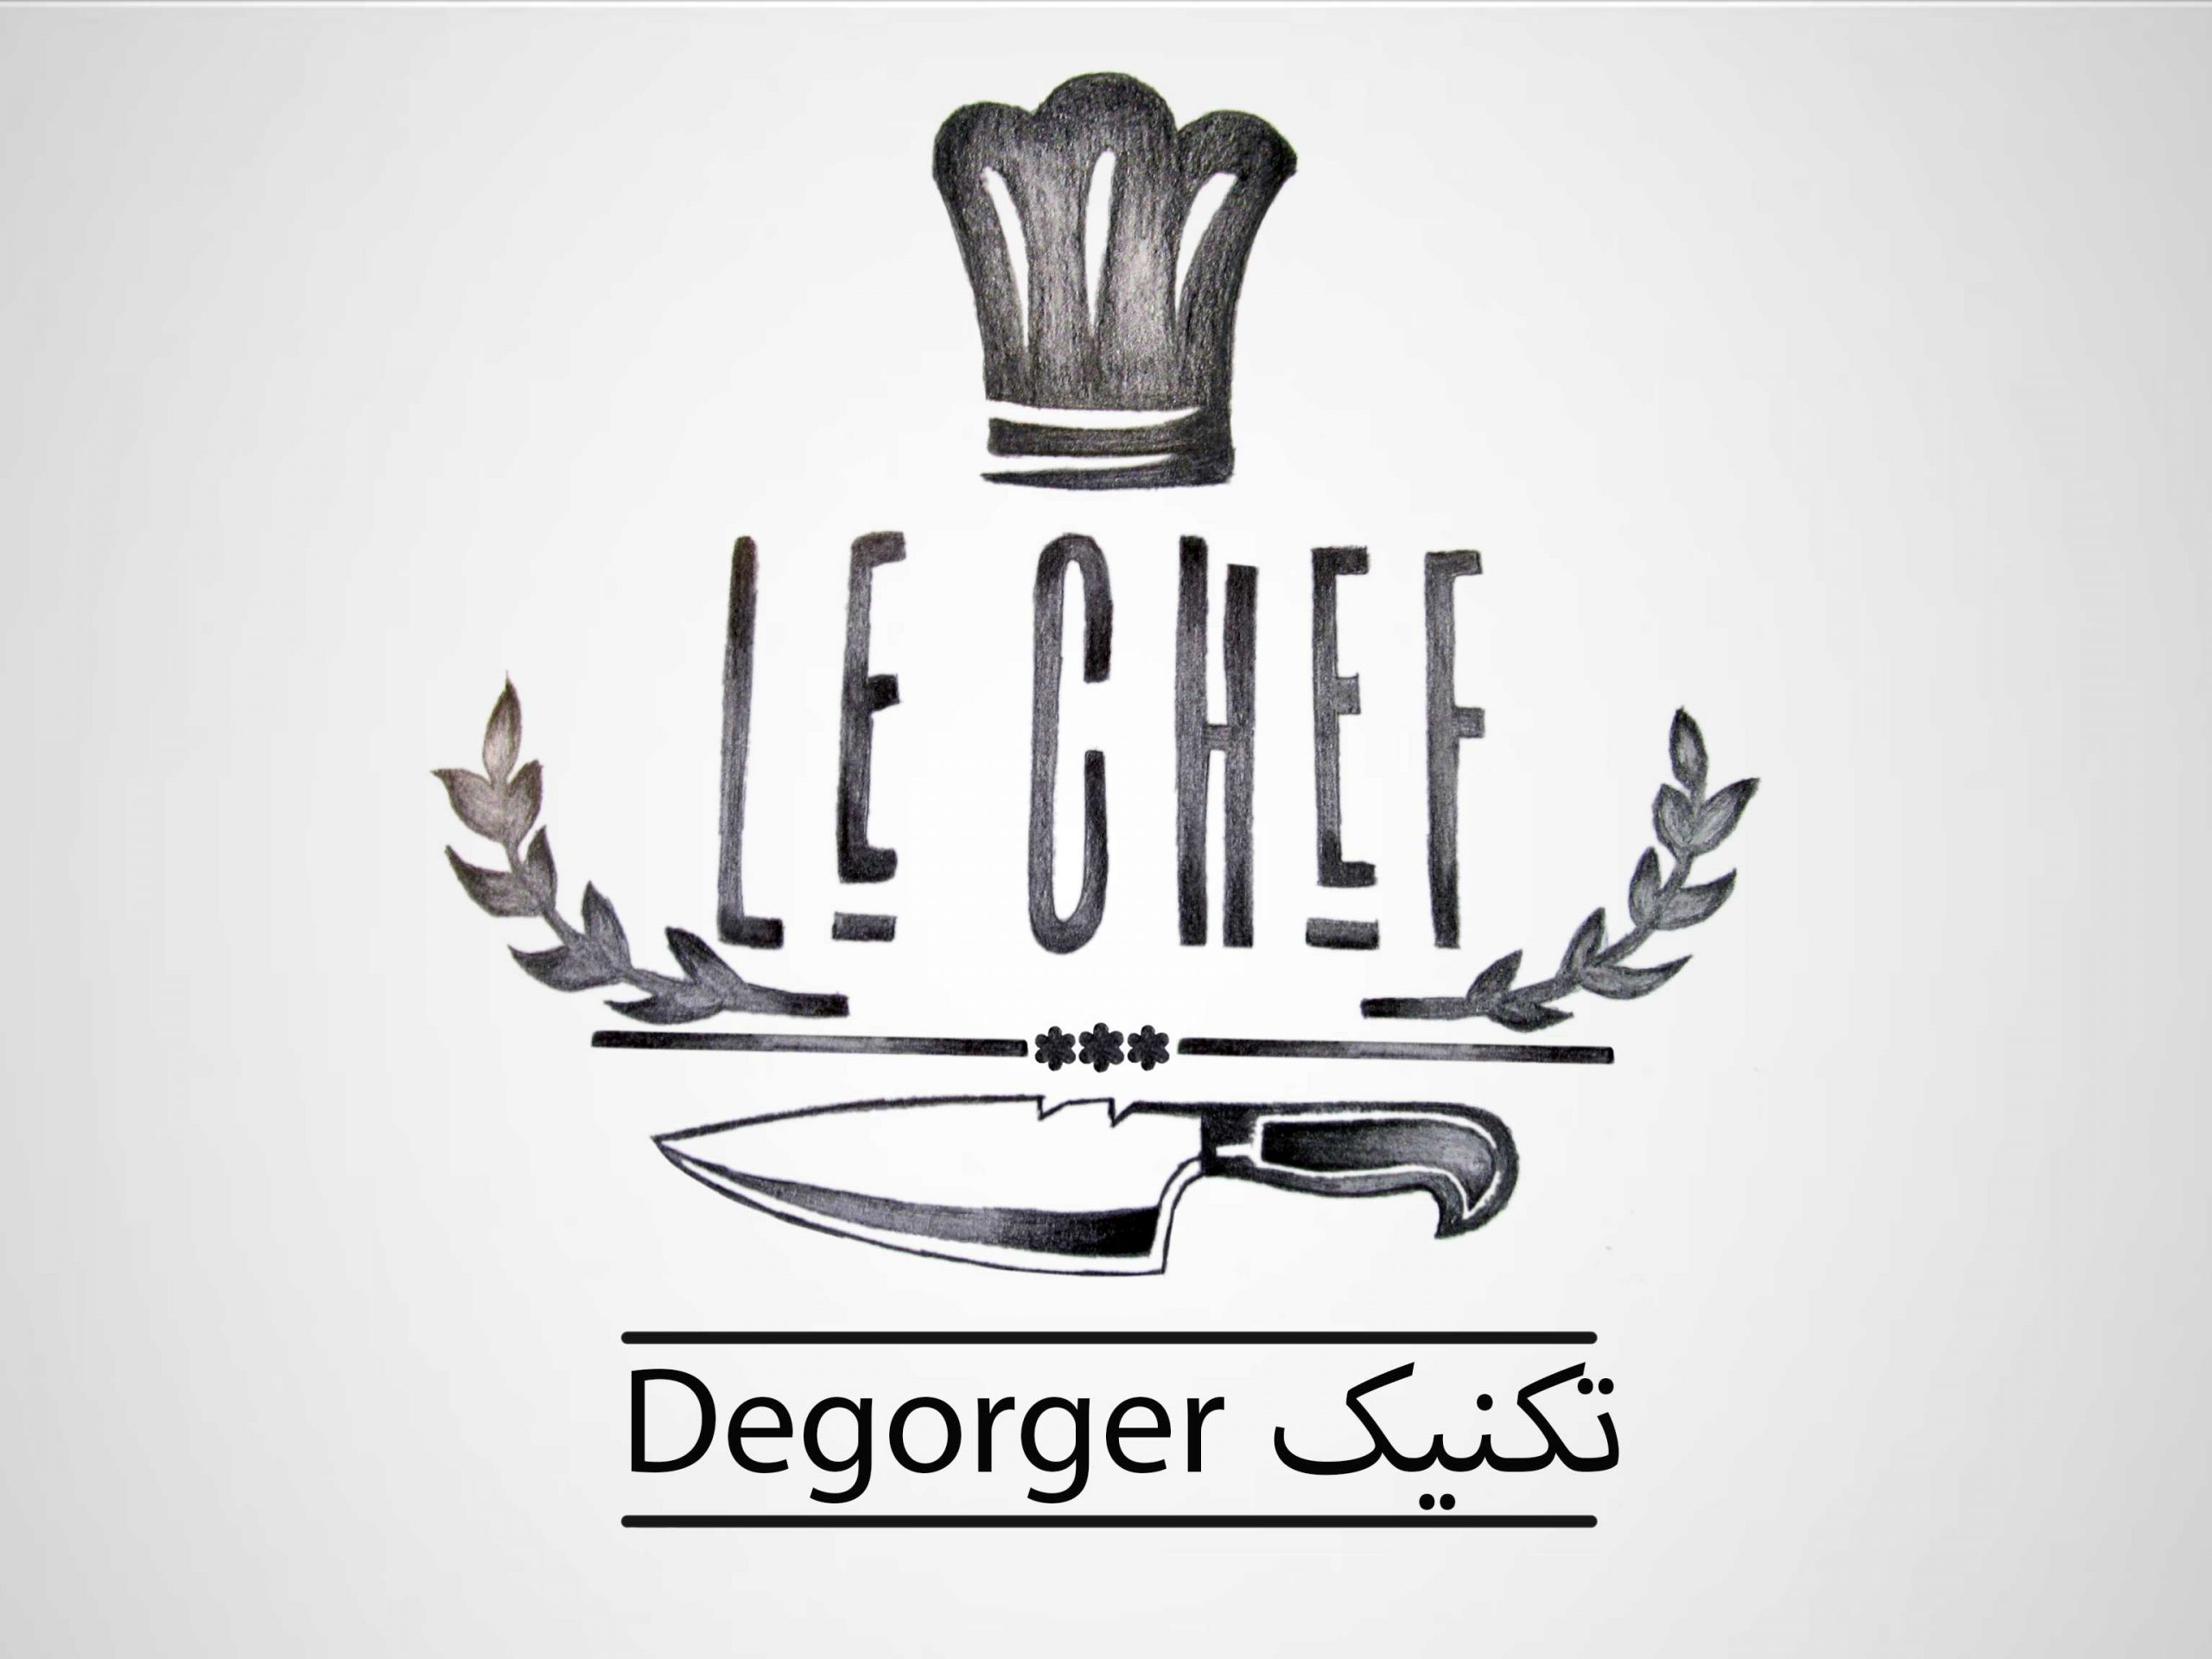 تکنیک دیگوغژه در آشپزی فرانسوی Dégorger